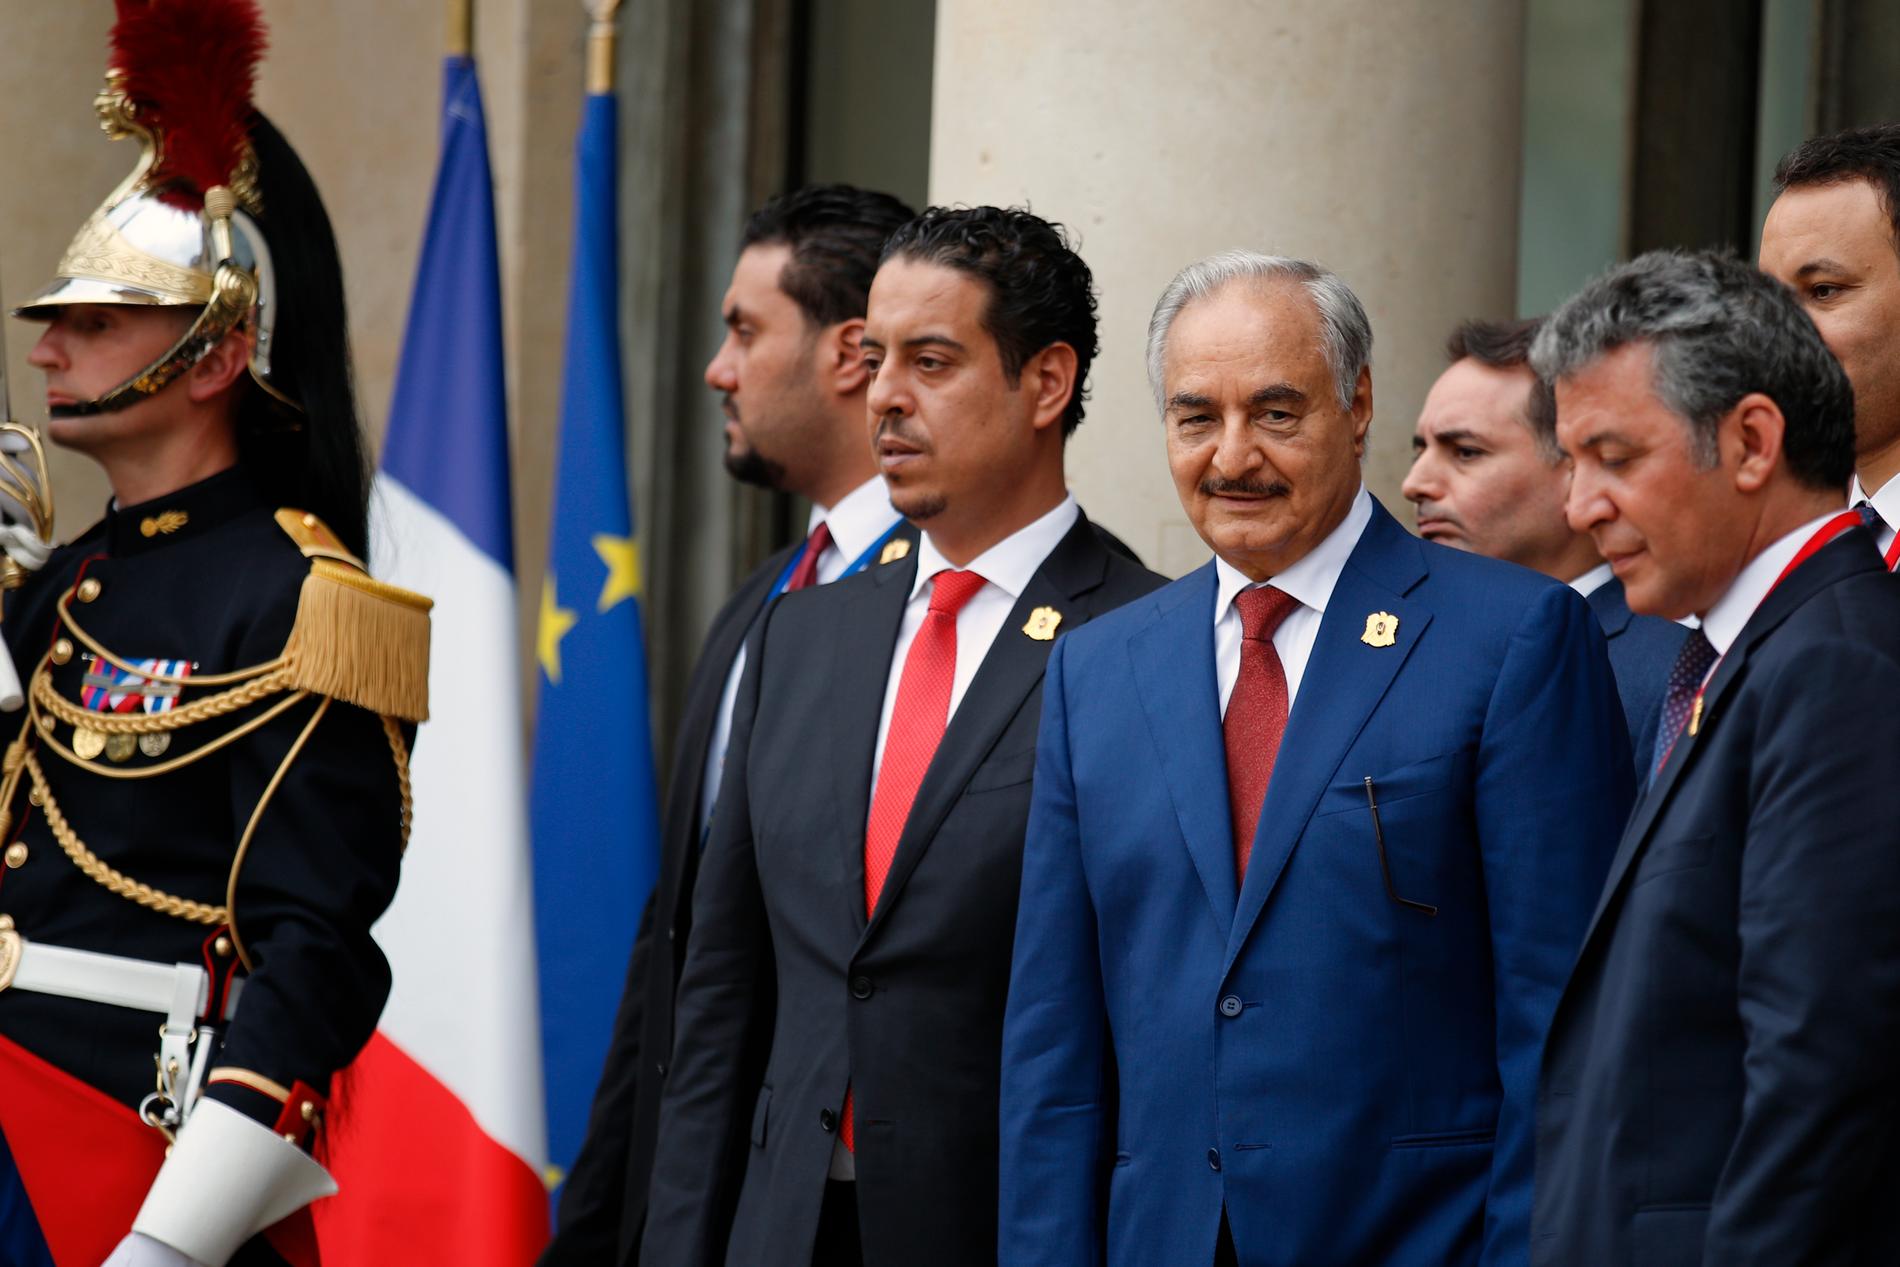 Den östlibyske krigsherren Khalifa Haftar (i blå kostym) efter ett möte i Paris i maj 2018. Arkivbild.